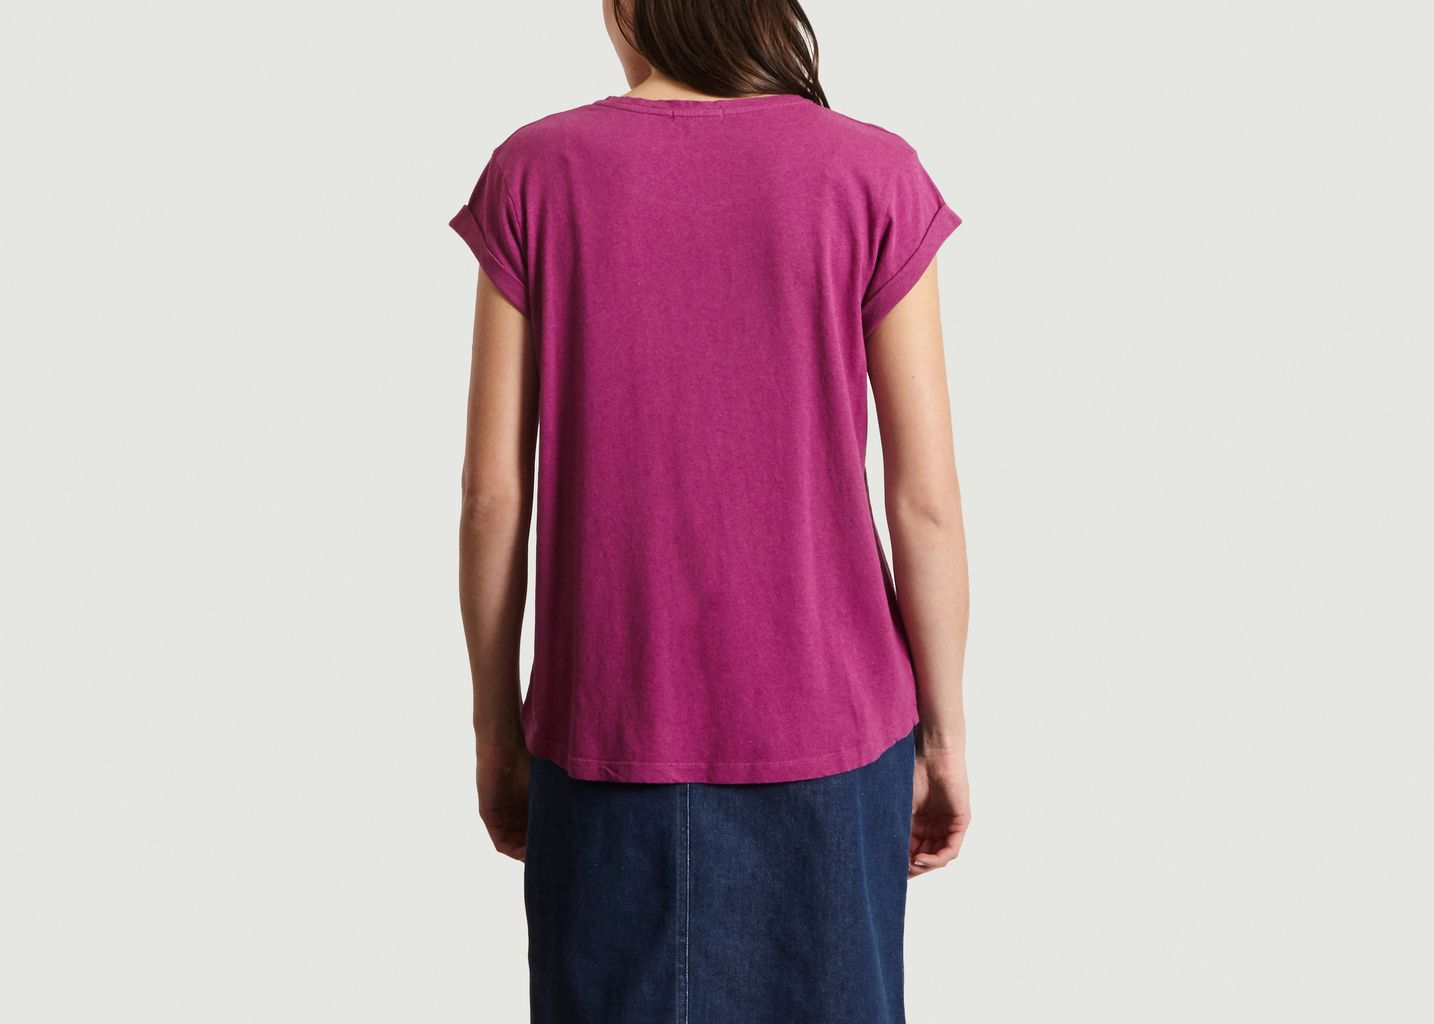 T-Shirt En Coton Et Lin Print Sud Valentin - Soeur